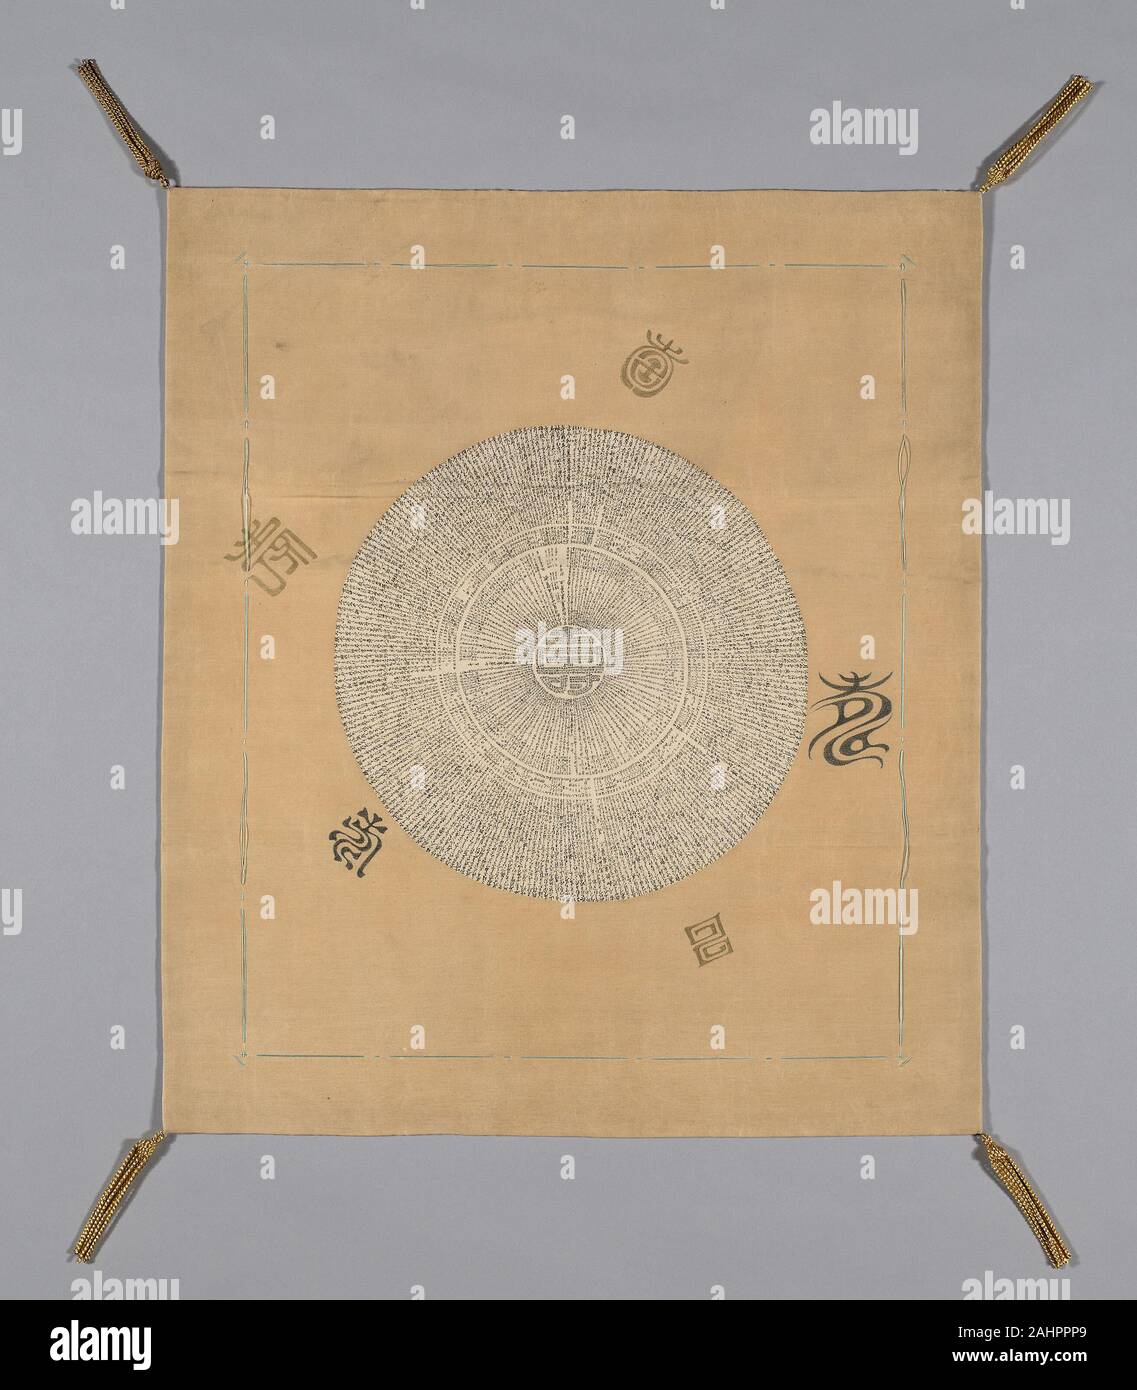 Technique de la soie enveloppée d'or Banque de photographies et d'images à  haute résolution - Alamy